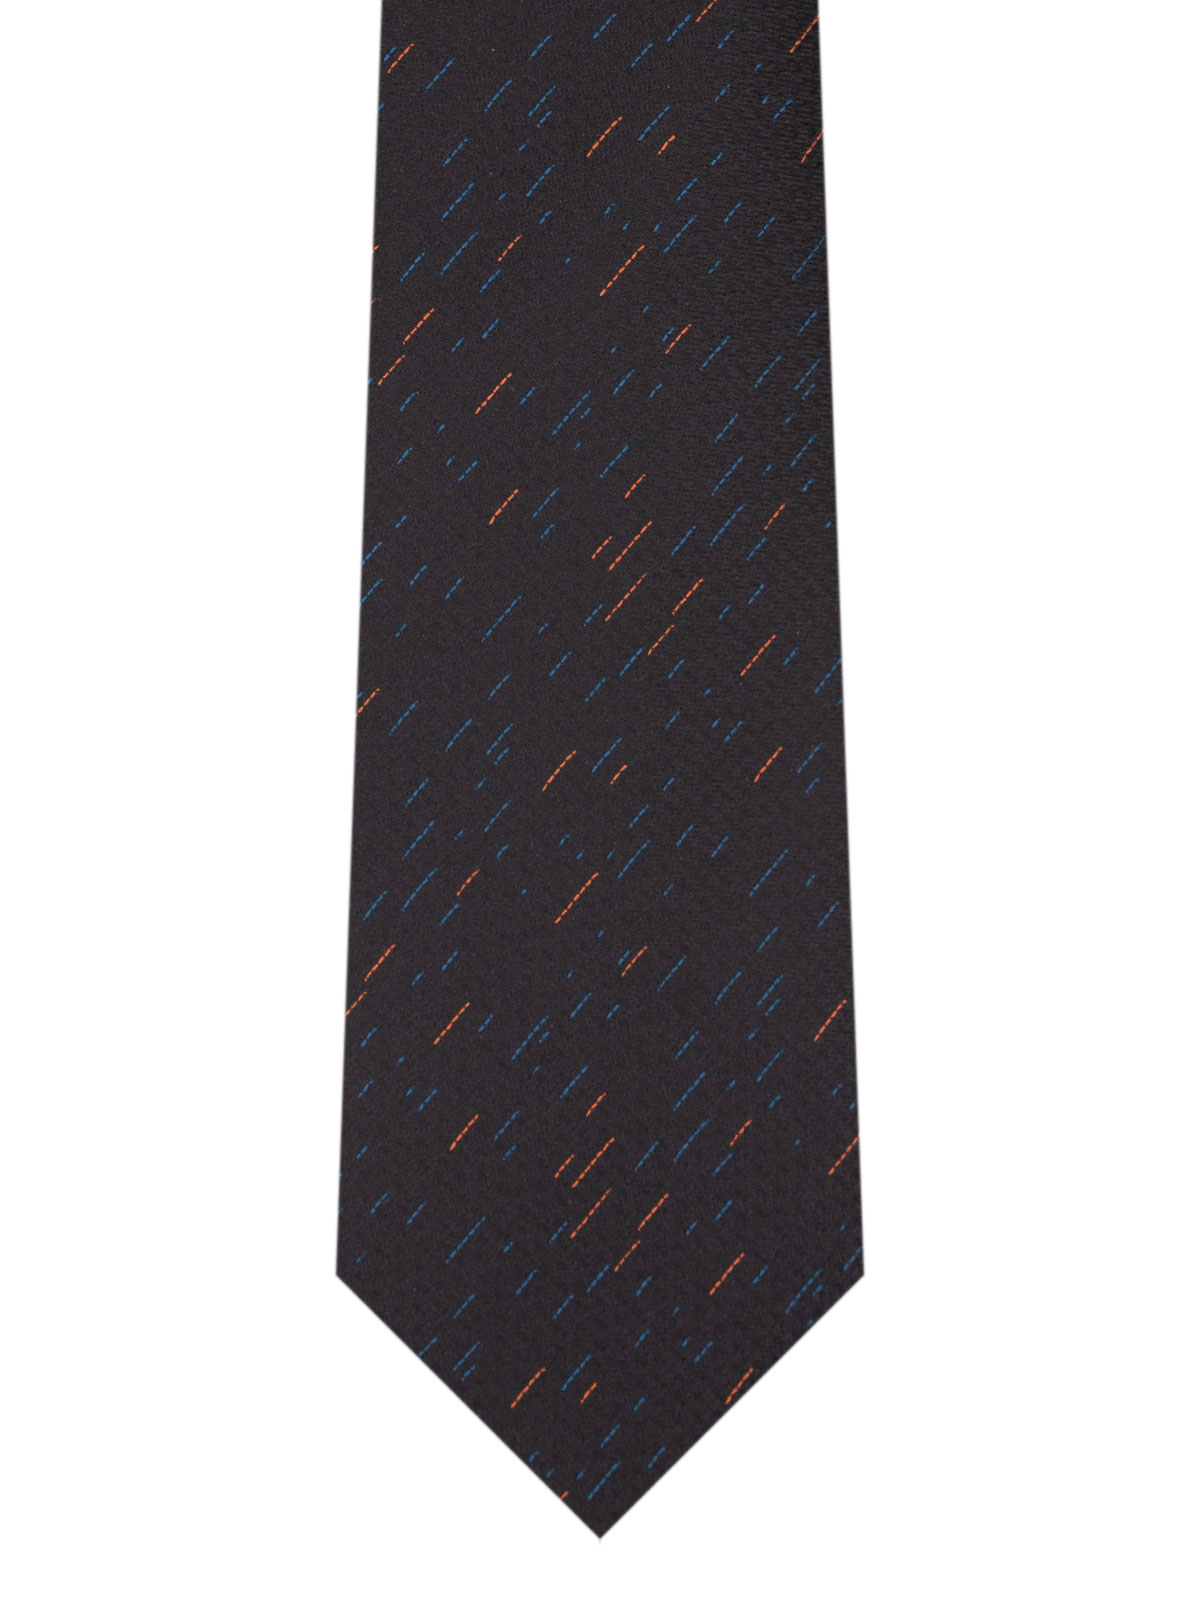 Δομημένη γραβάτα με χρωματιστές κλωστές - 10172 - € 14.06 img2